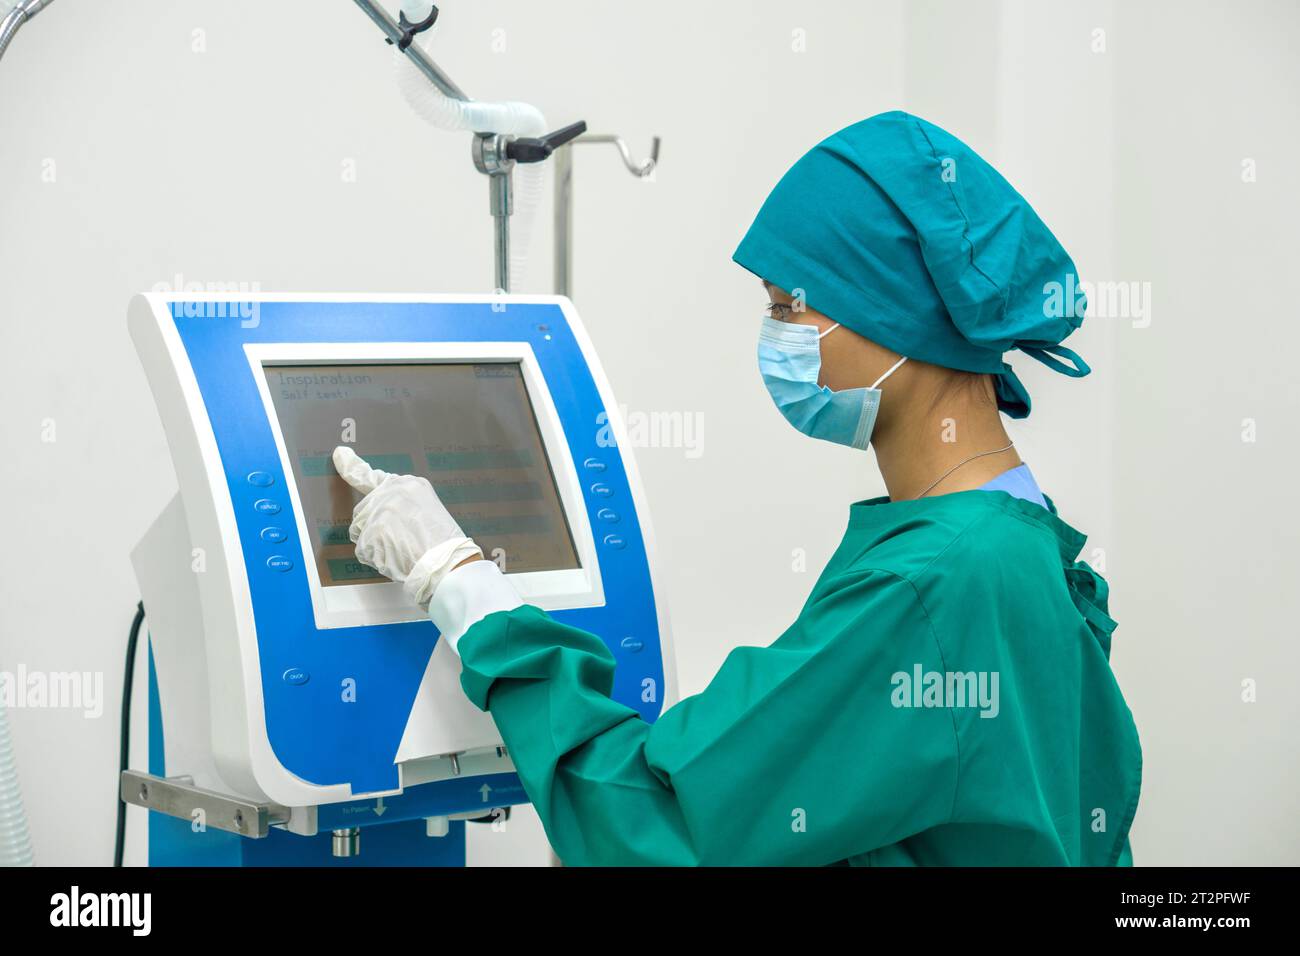 Un chirurgien inébranlable, vêtu d'une tenue chirurgicale stérile, utilise de manière experte un dispositif électronique avancé au milieu de la sérénité high-tech d'un opérat Banque D'Images